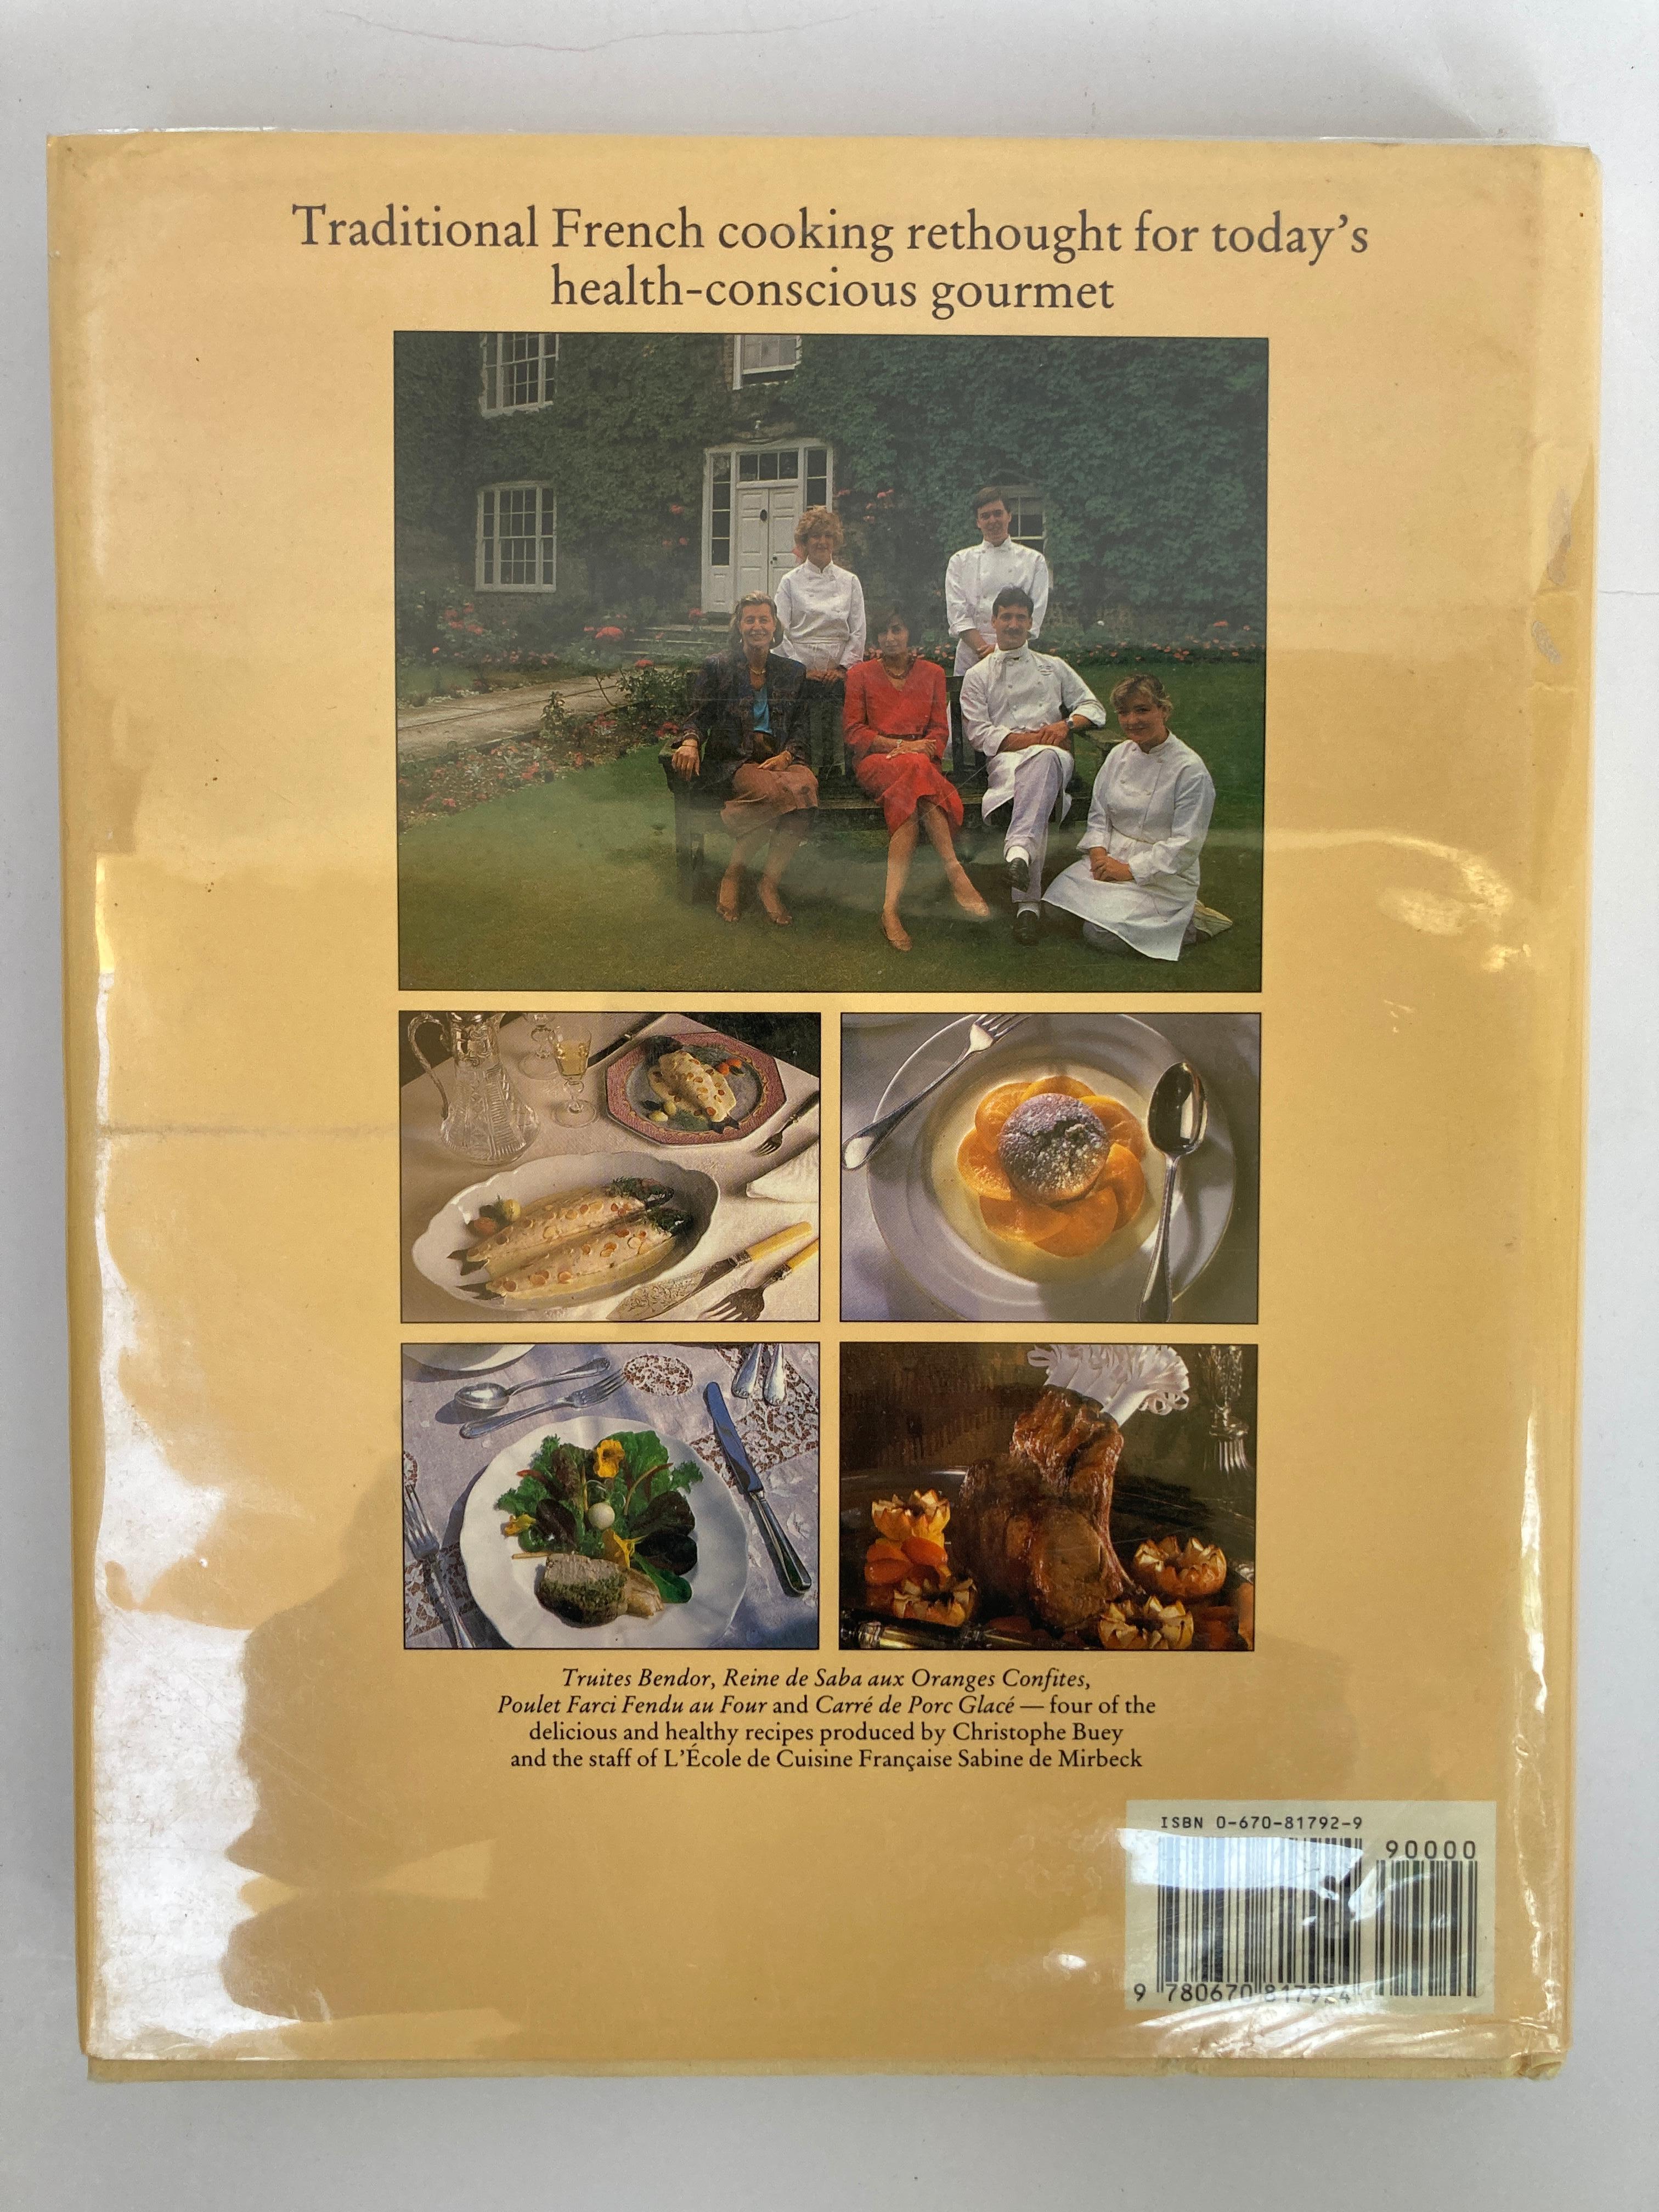 Cuisine Sante par Christopher Buey, livre de cuisine française
Un chef renommé propose une compilation de plus de 150 recettes d'inspiration française pour des repas gastronomiques à base d'ingrédients qui satisferont même les mangeurs modernes les